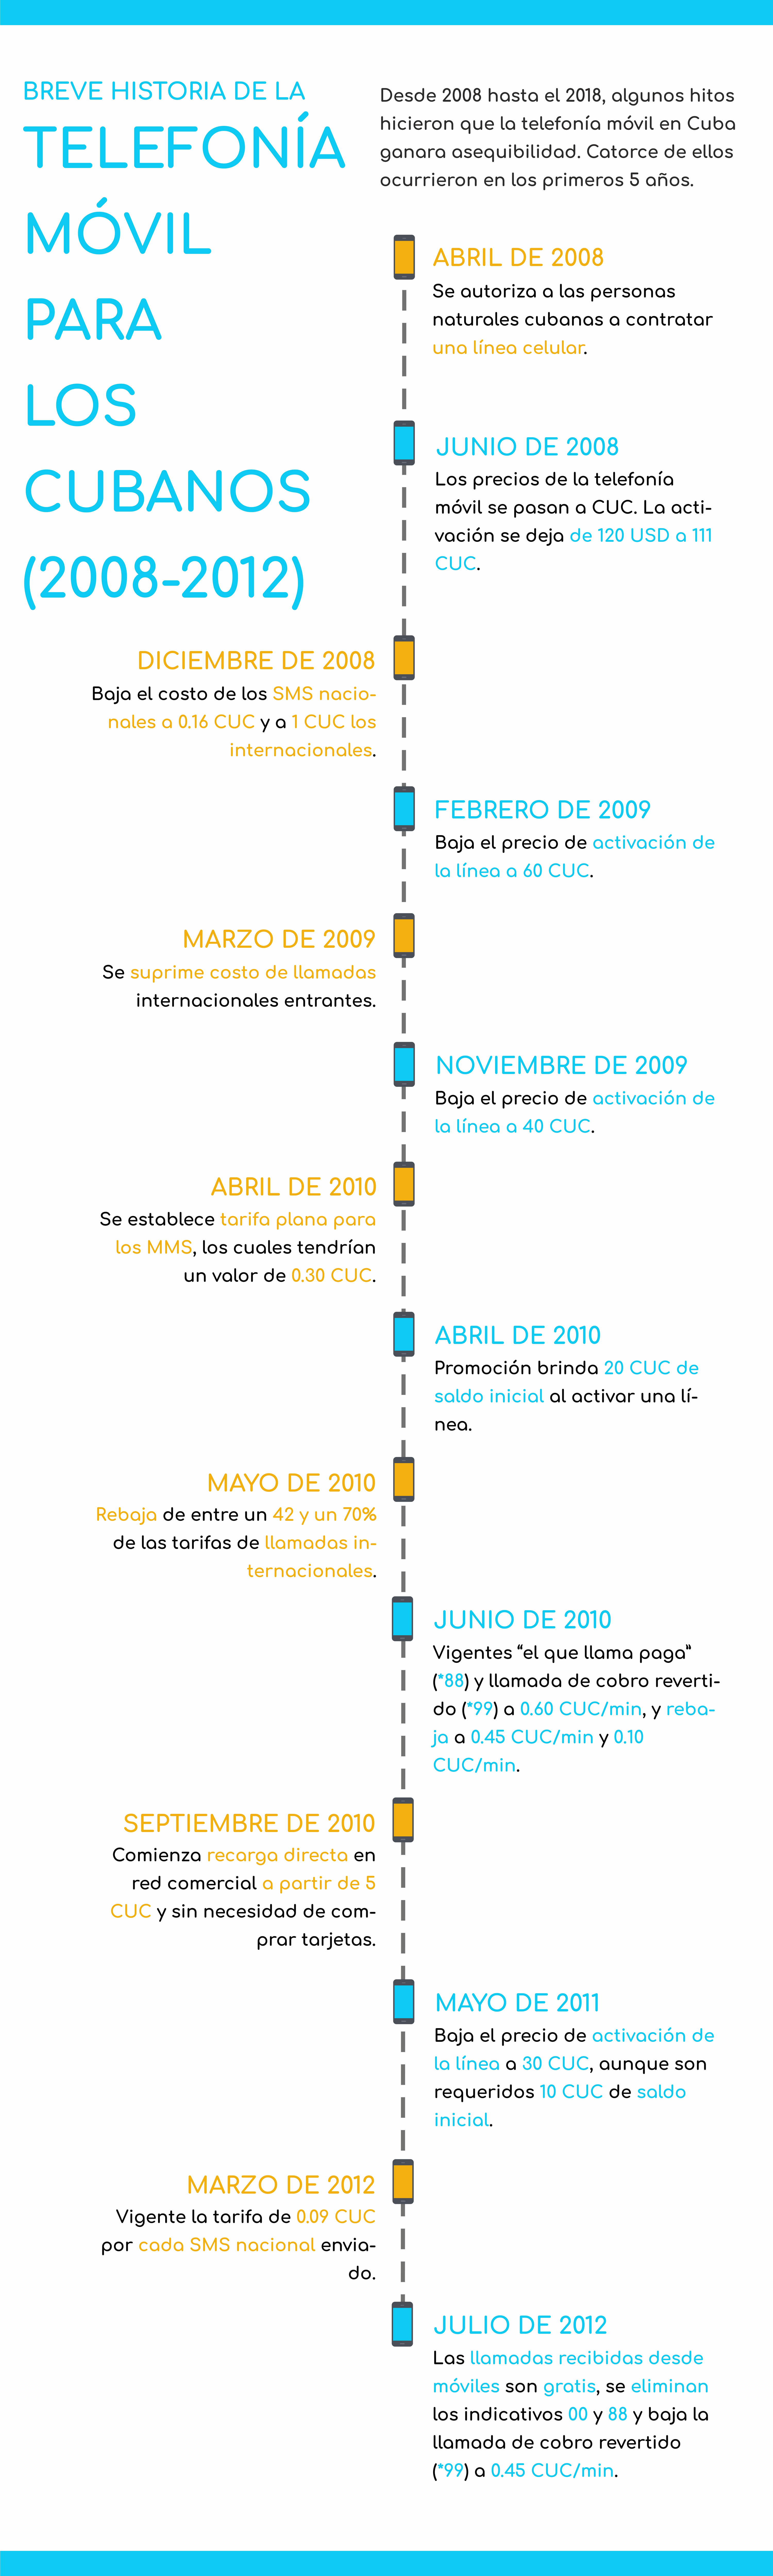 Breve historia de la telefonía móvil en Cuba (2008-2012)